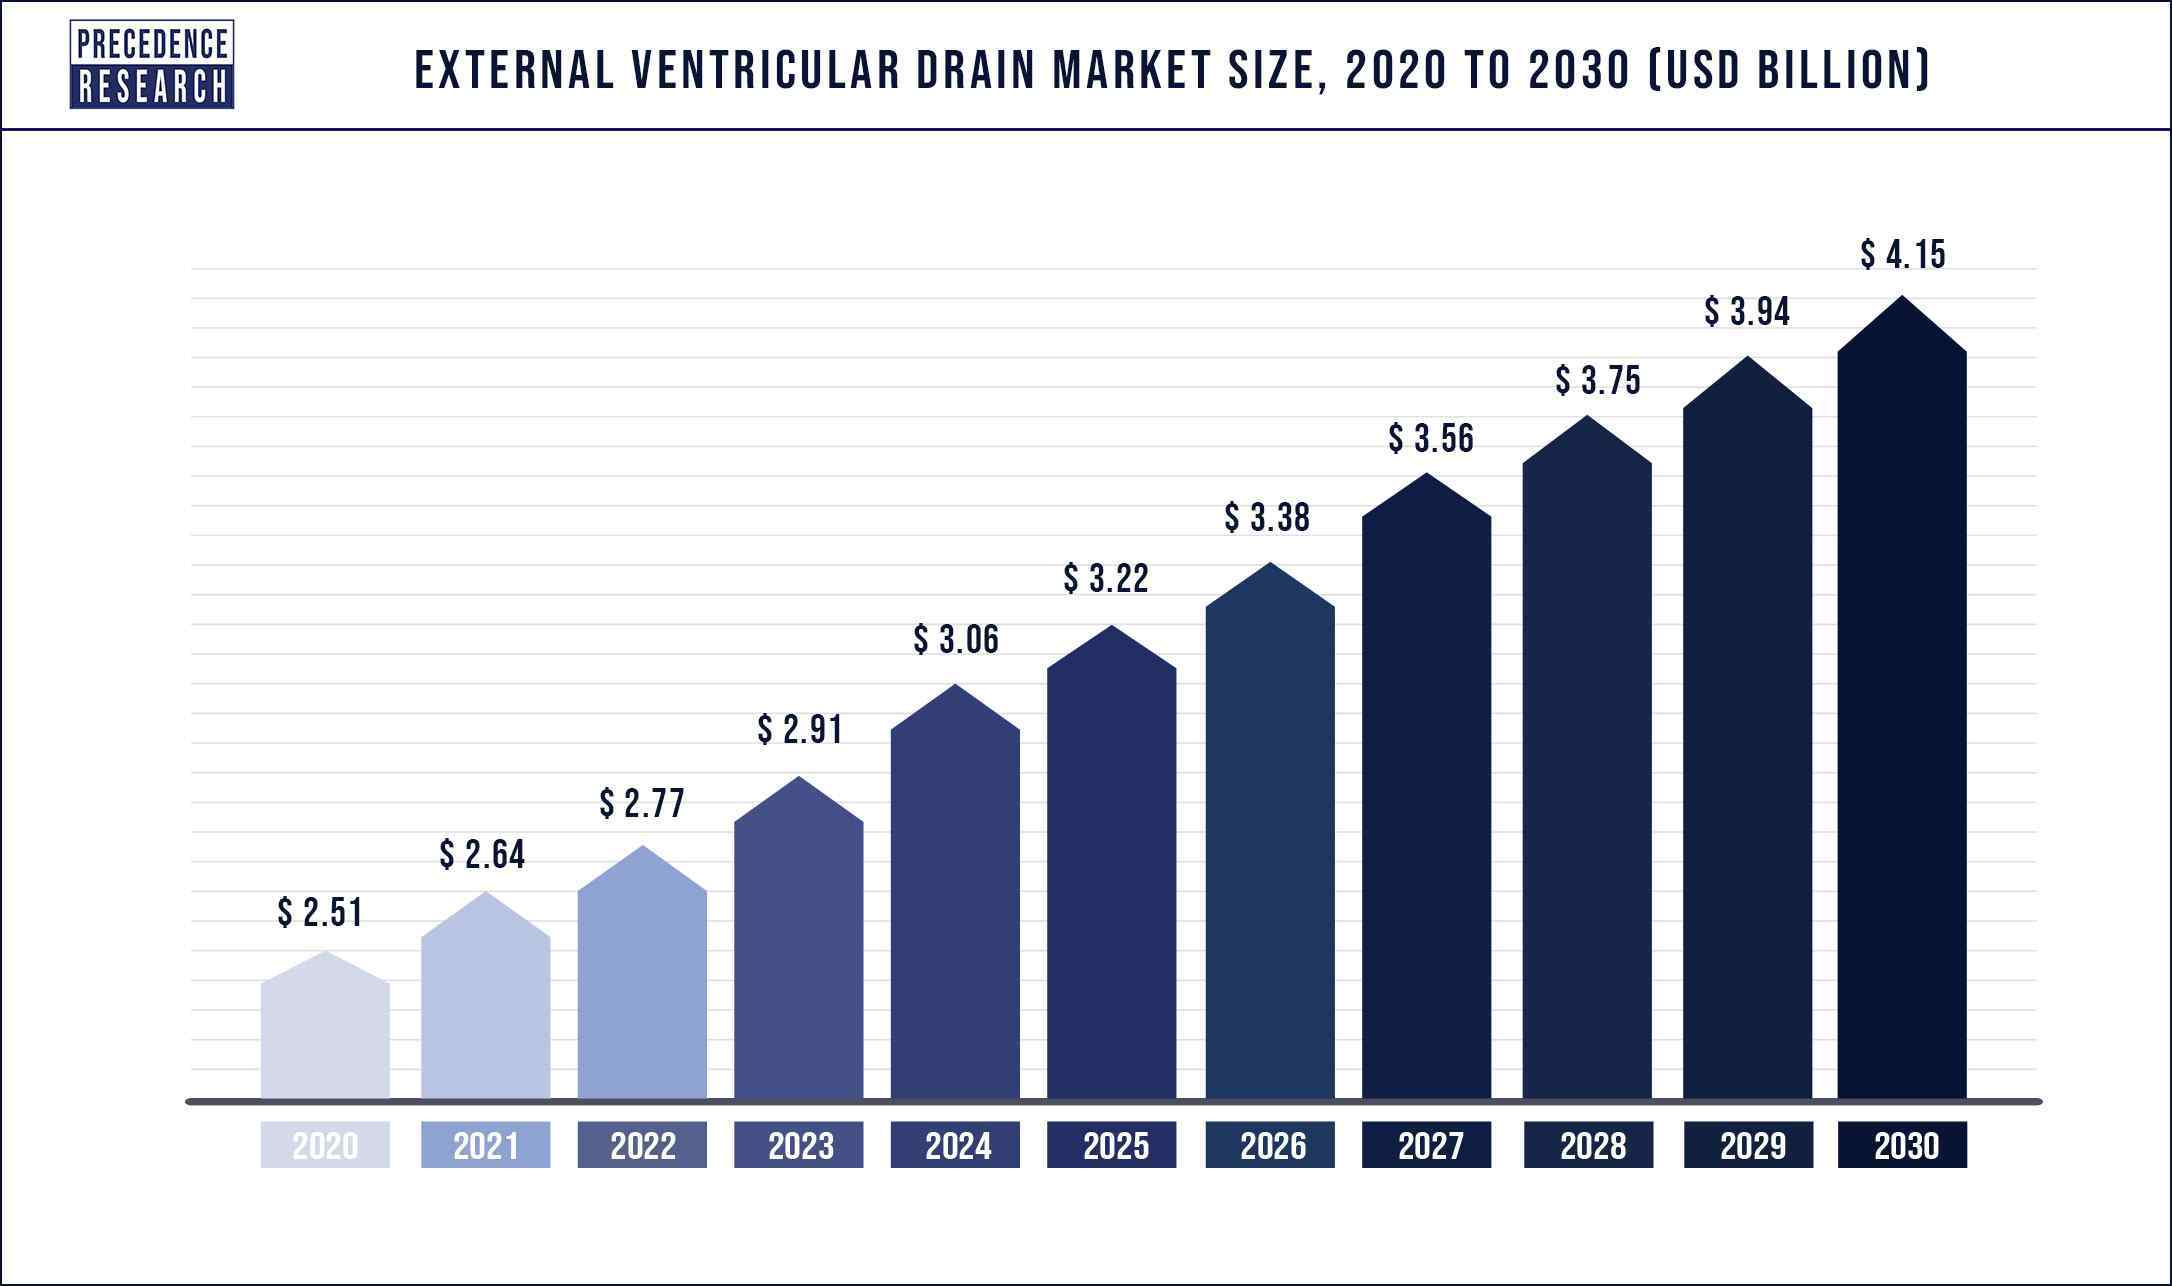 External Ventricular Drain Market Size 2020-2030